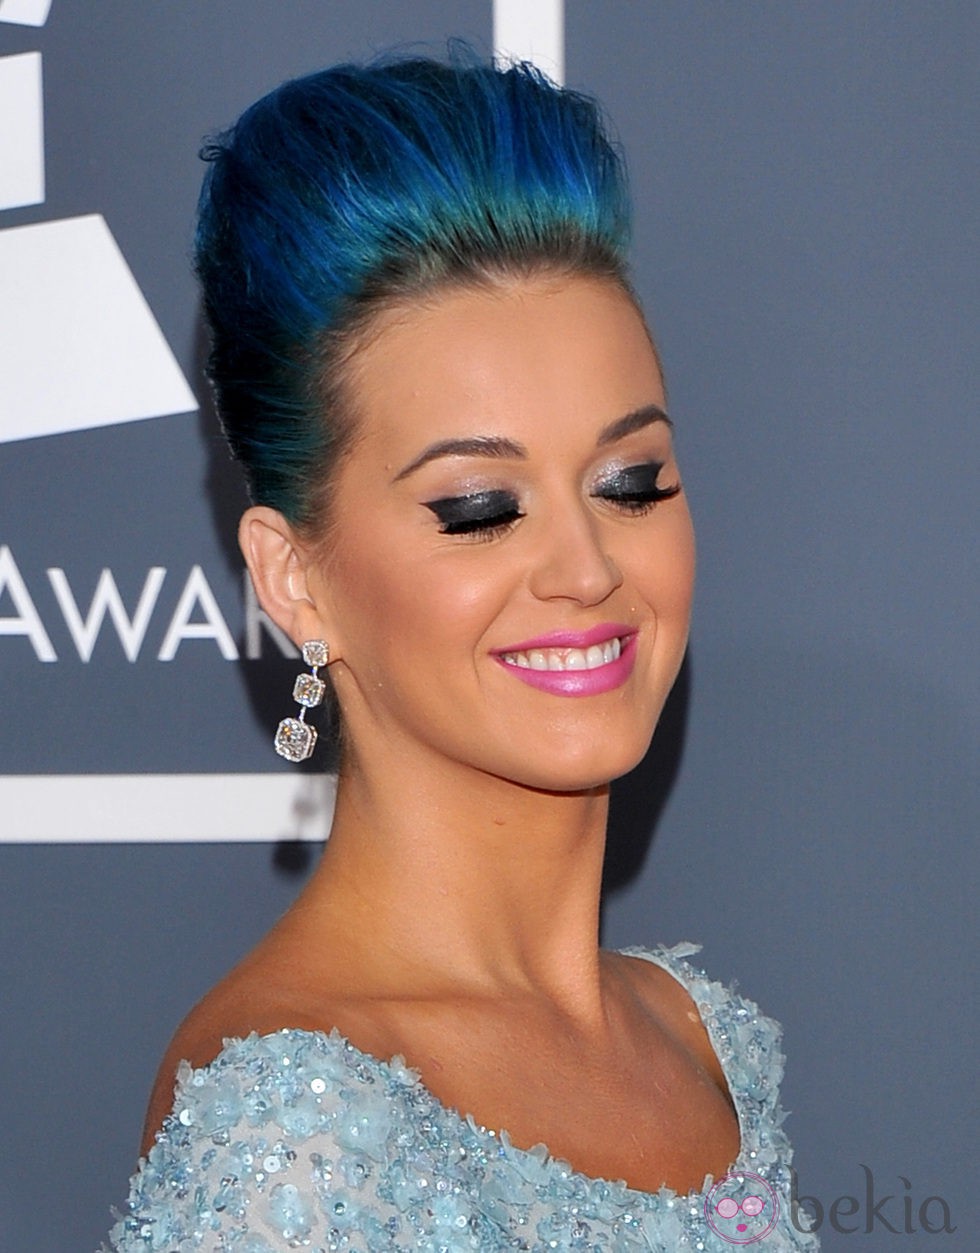 Katy Perry con pestañas postizas muy curvadas